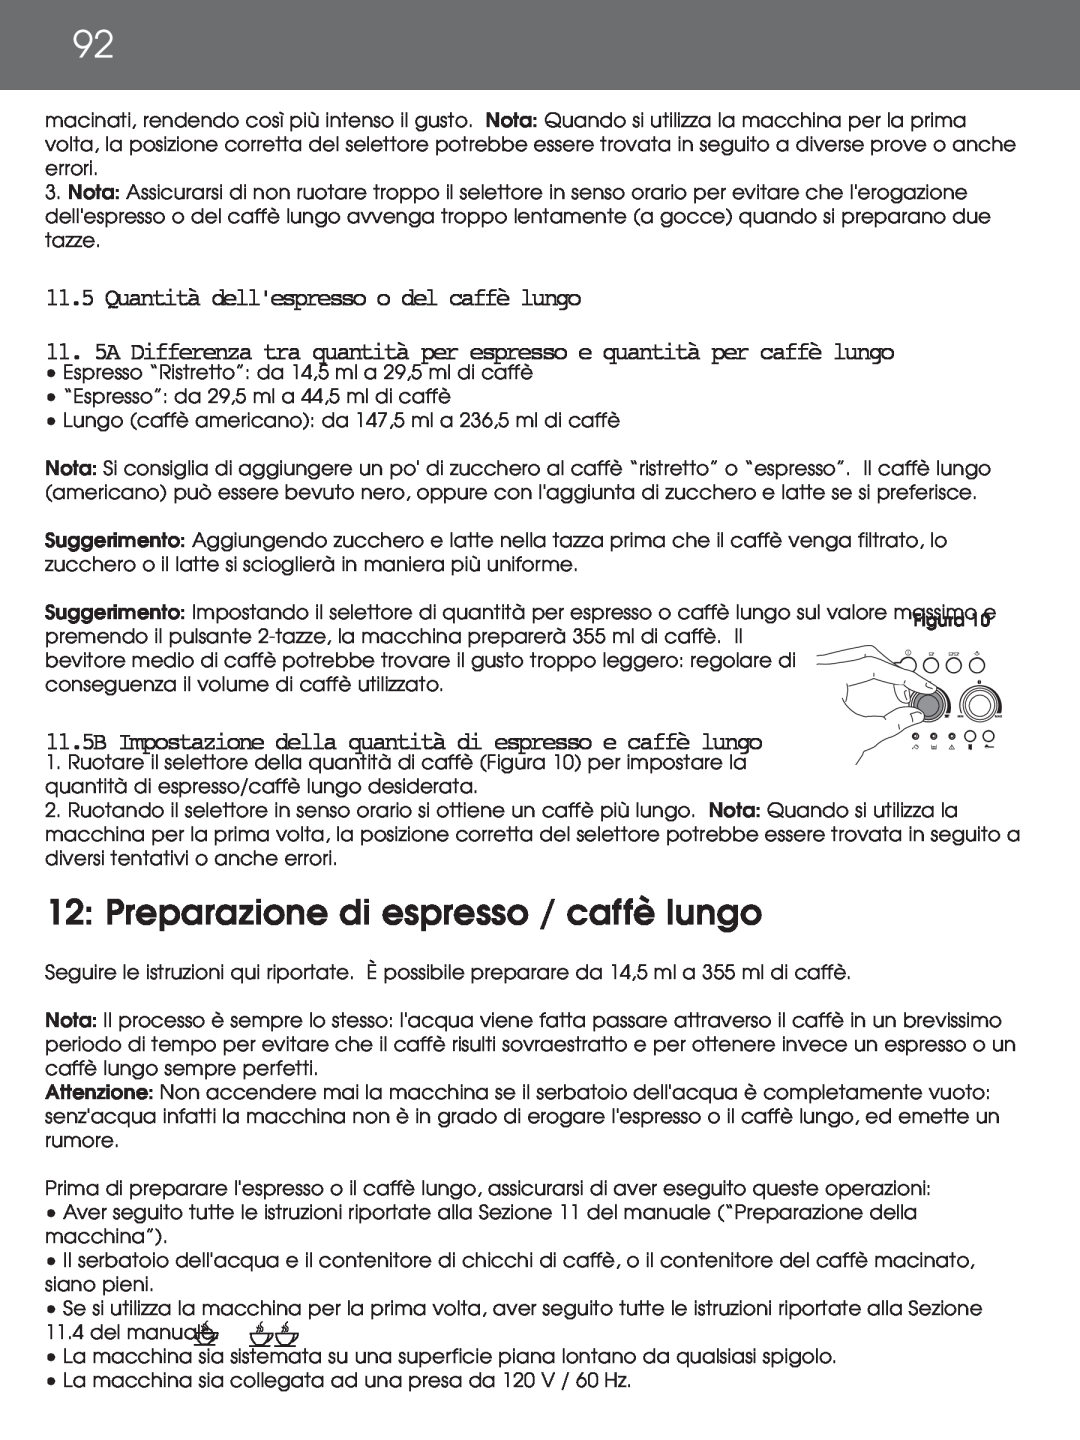 DeLonghi EAM4000 instruction manual 12: Preparazione di espresso / caffè lungo, Quantità dellespresso o del caffè lungo 